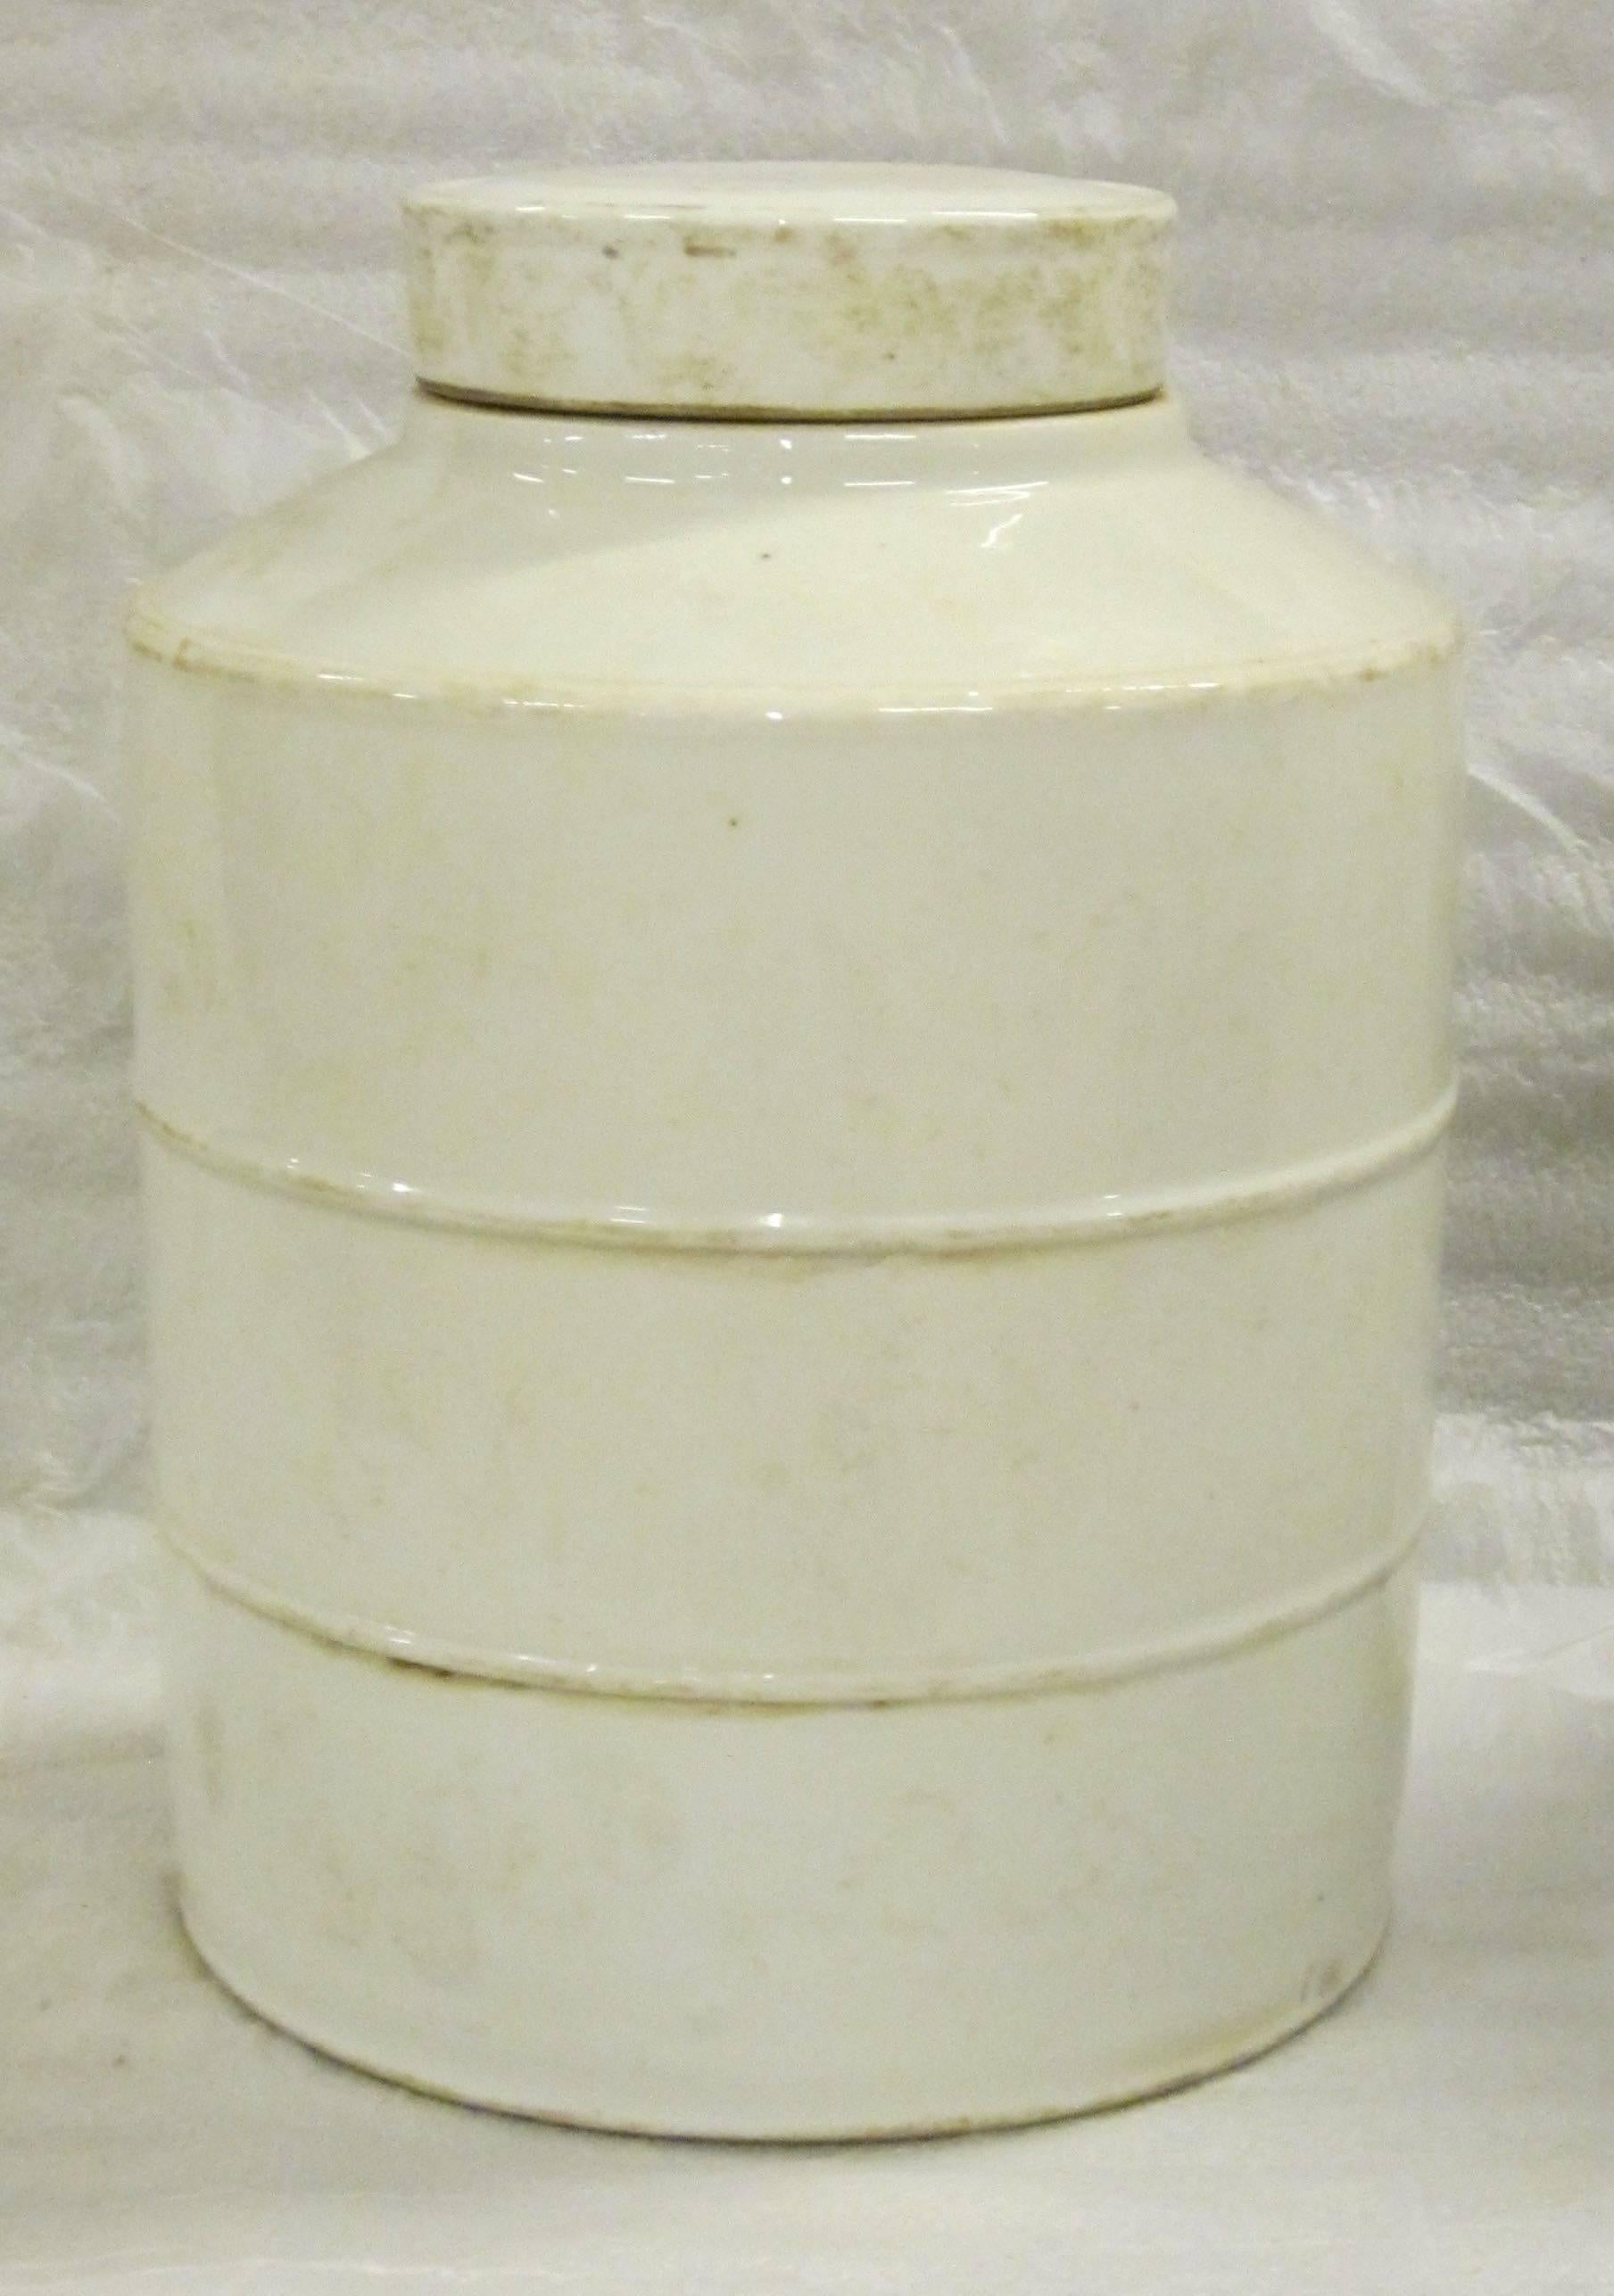 Paire de jarres rondes striées blanches avec couvercles, de style contemporain chinois.
La glaçure présente des détails de couleur vieillie.
  